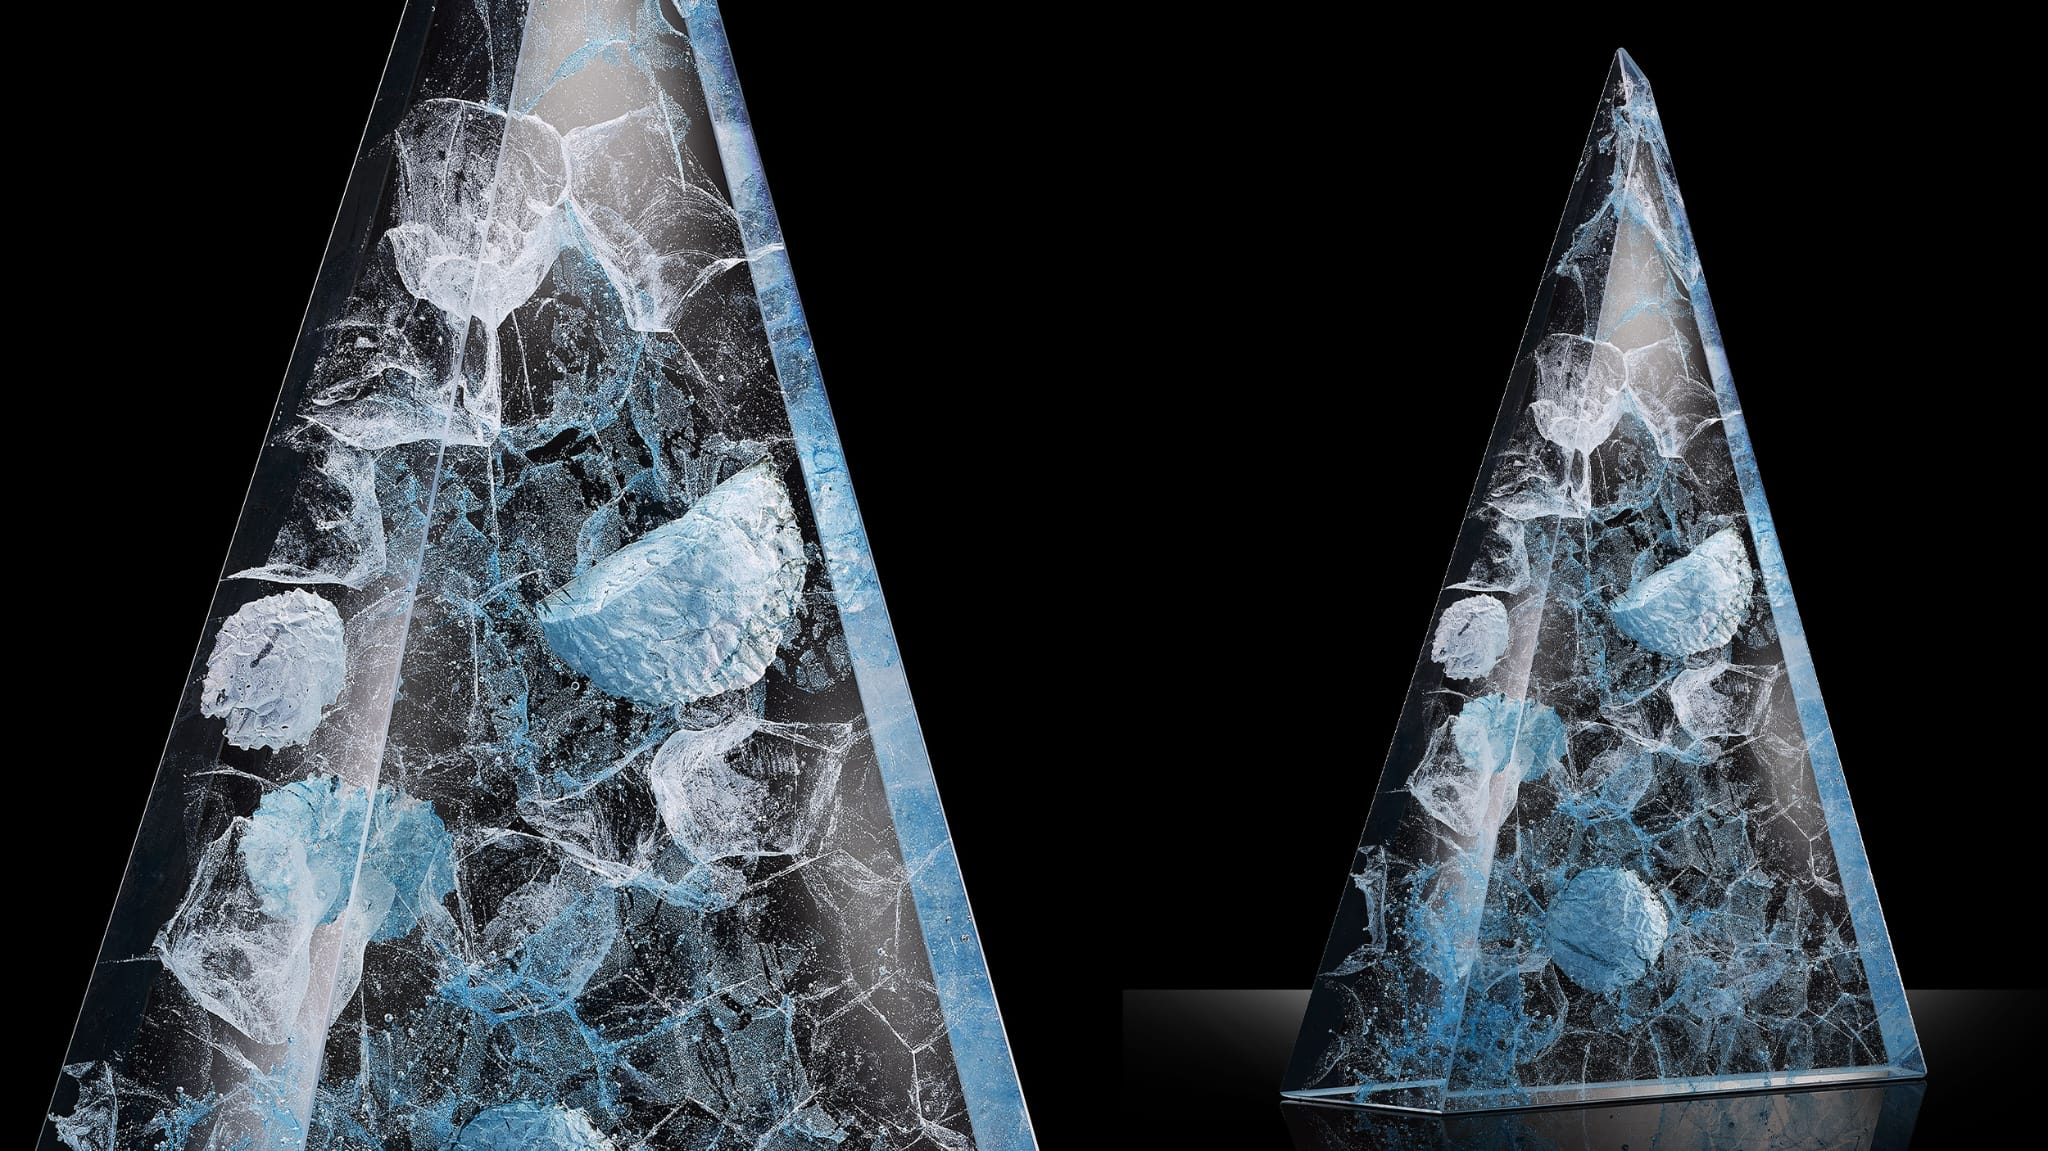 L'illustration montre deux stèles pyramidales en verre avec des formes nébuleuses, dans les tons gris-bleus. Elles se détachent du fond noir pour offrir un contraste clair-obscur.